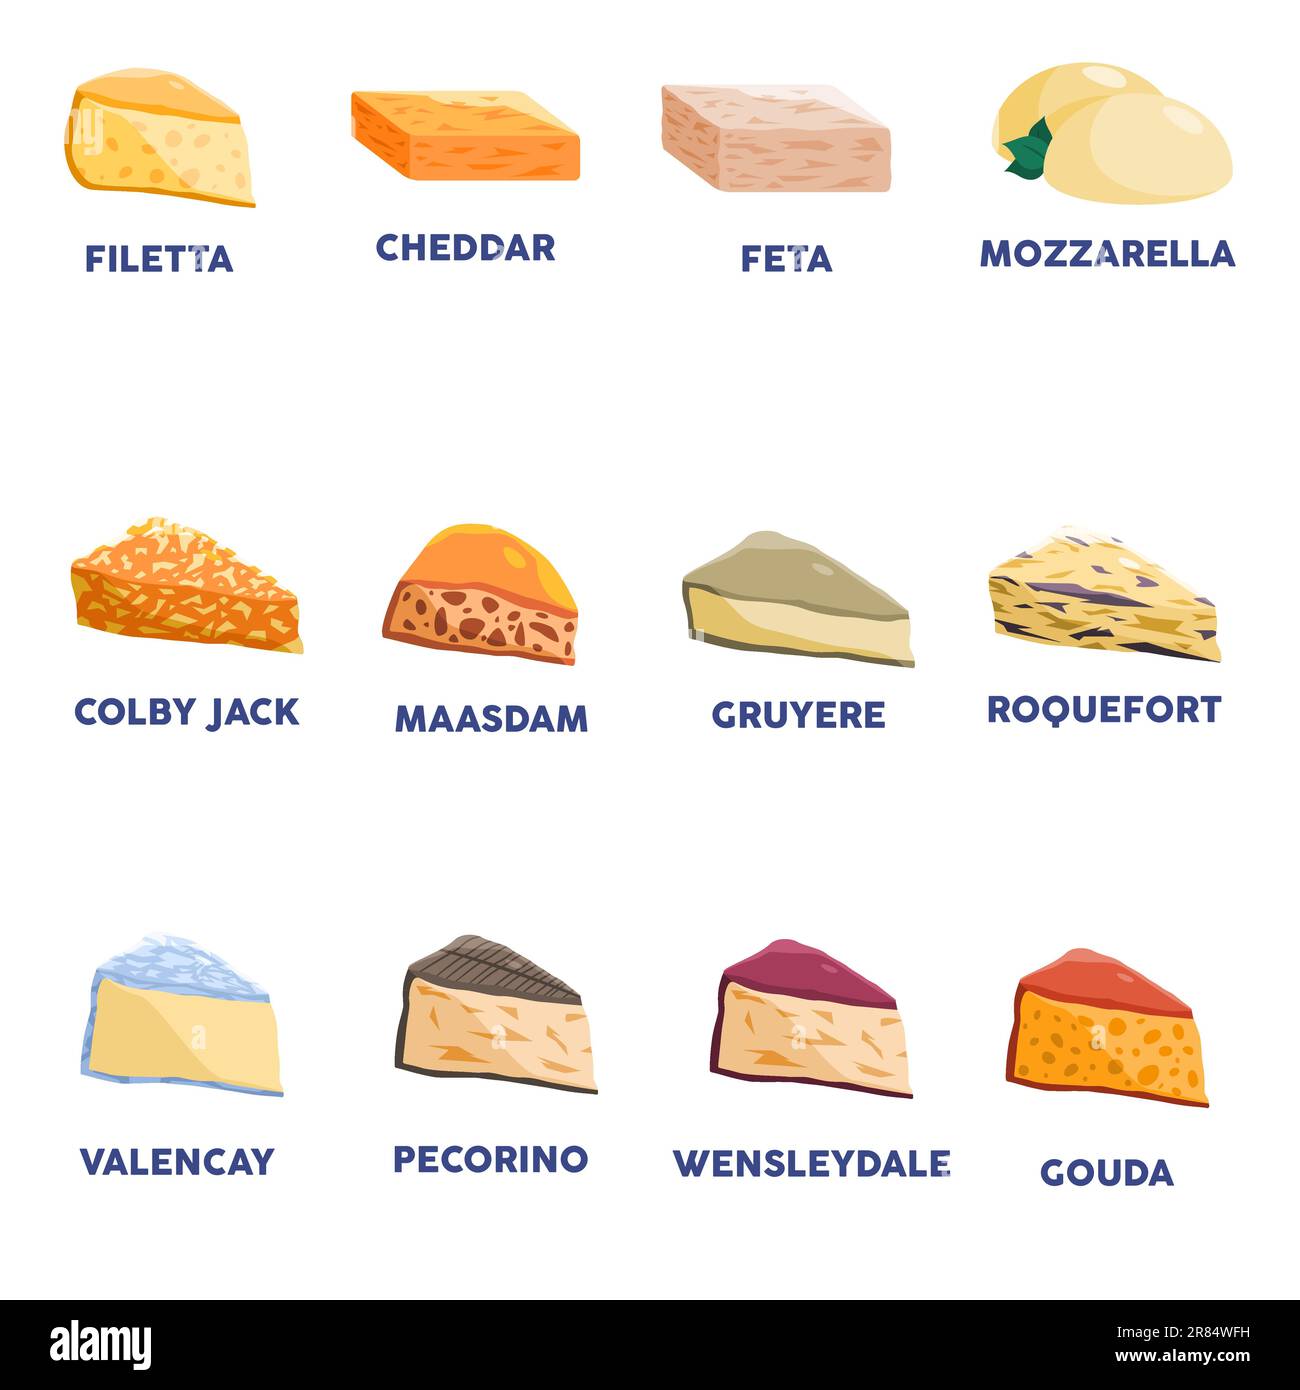 type de fromage parmesan délicieux aliments sains fraîcheur calcium savoureux plat produit laitier Illustration de Vecteur